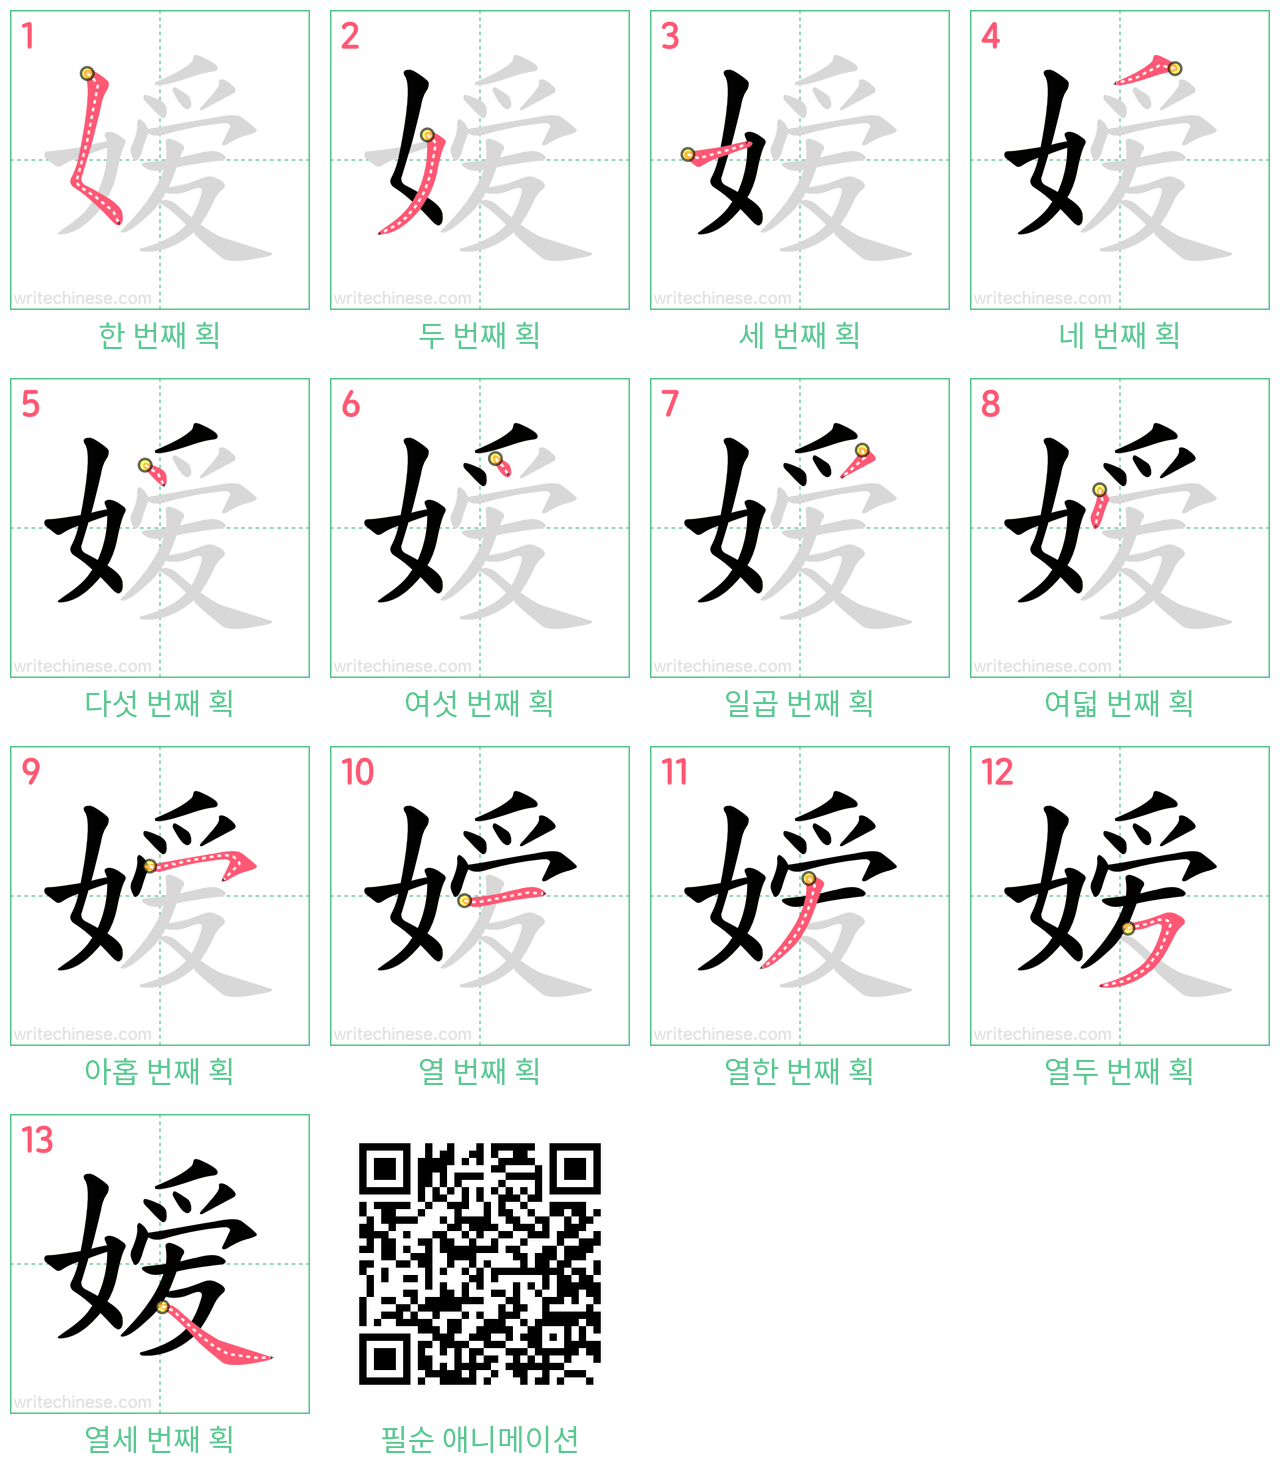 嫒 step-by-step stroke order diagrams